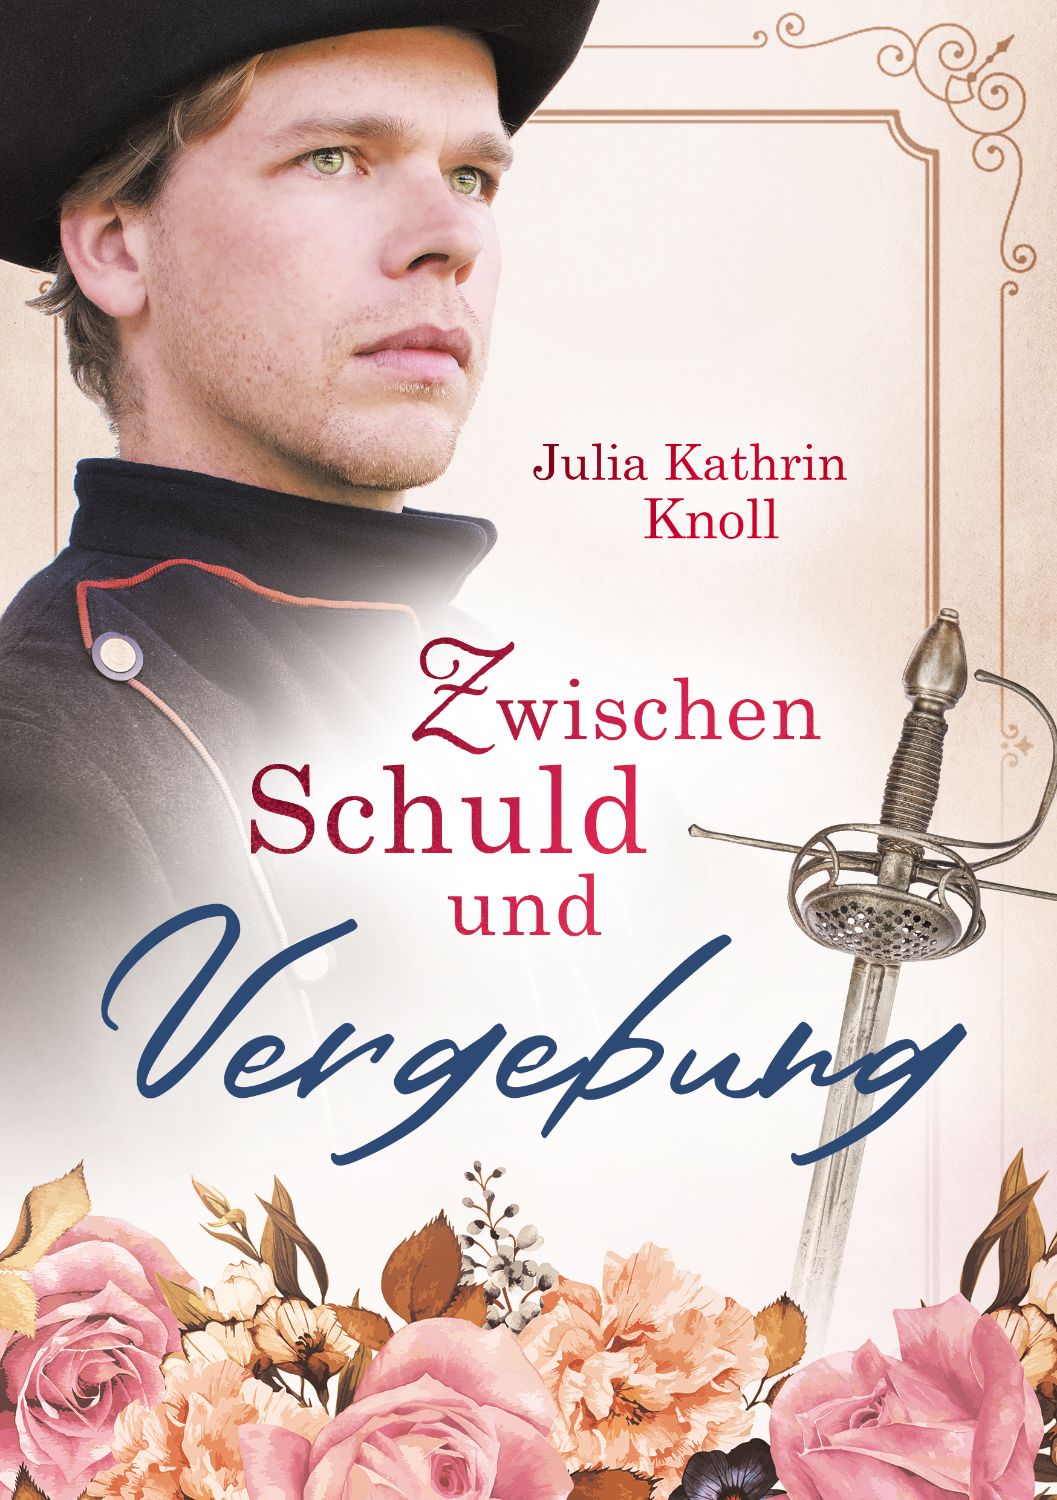 Buchcover Design Historisch Zwischen Schuld und Vergebung von Julia Kathrin Knoll